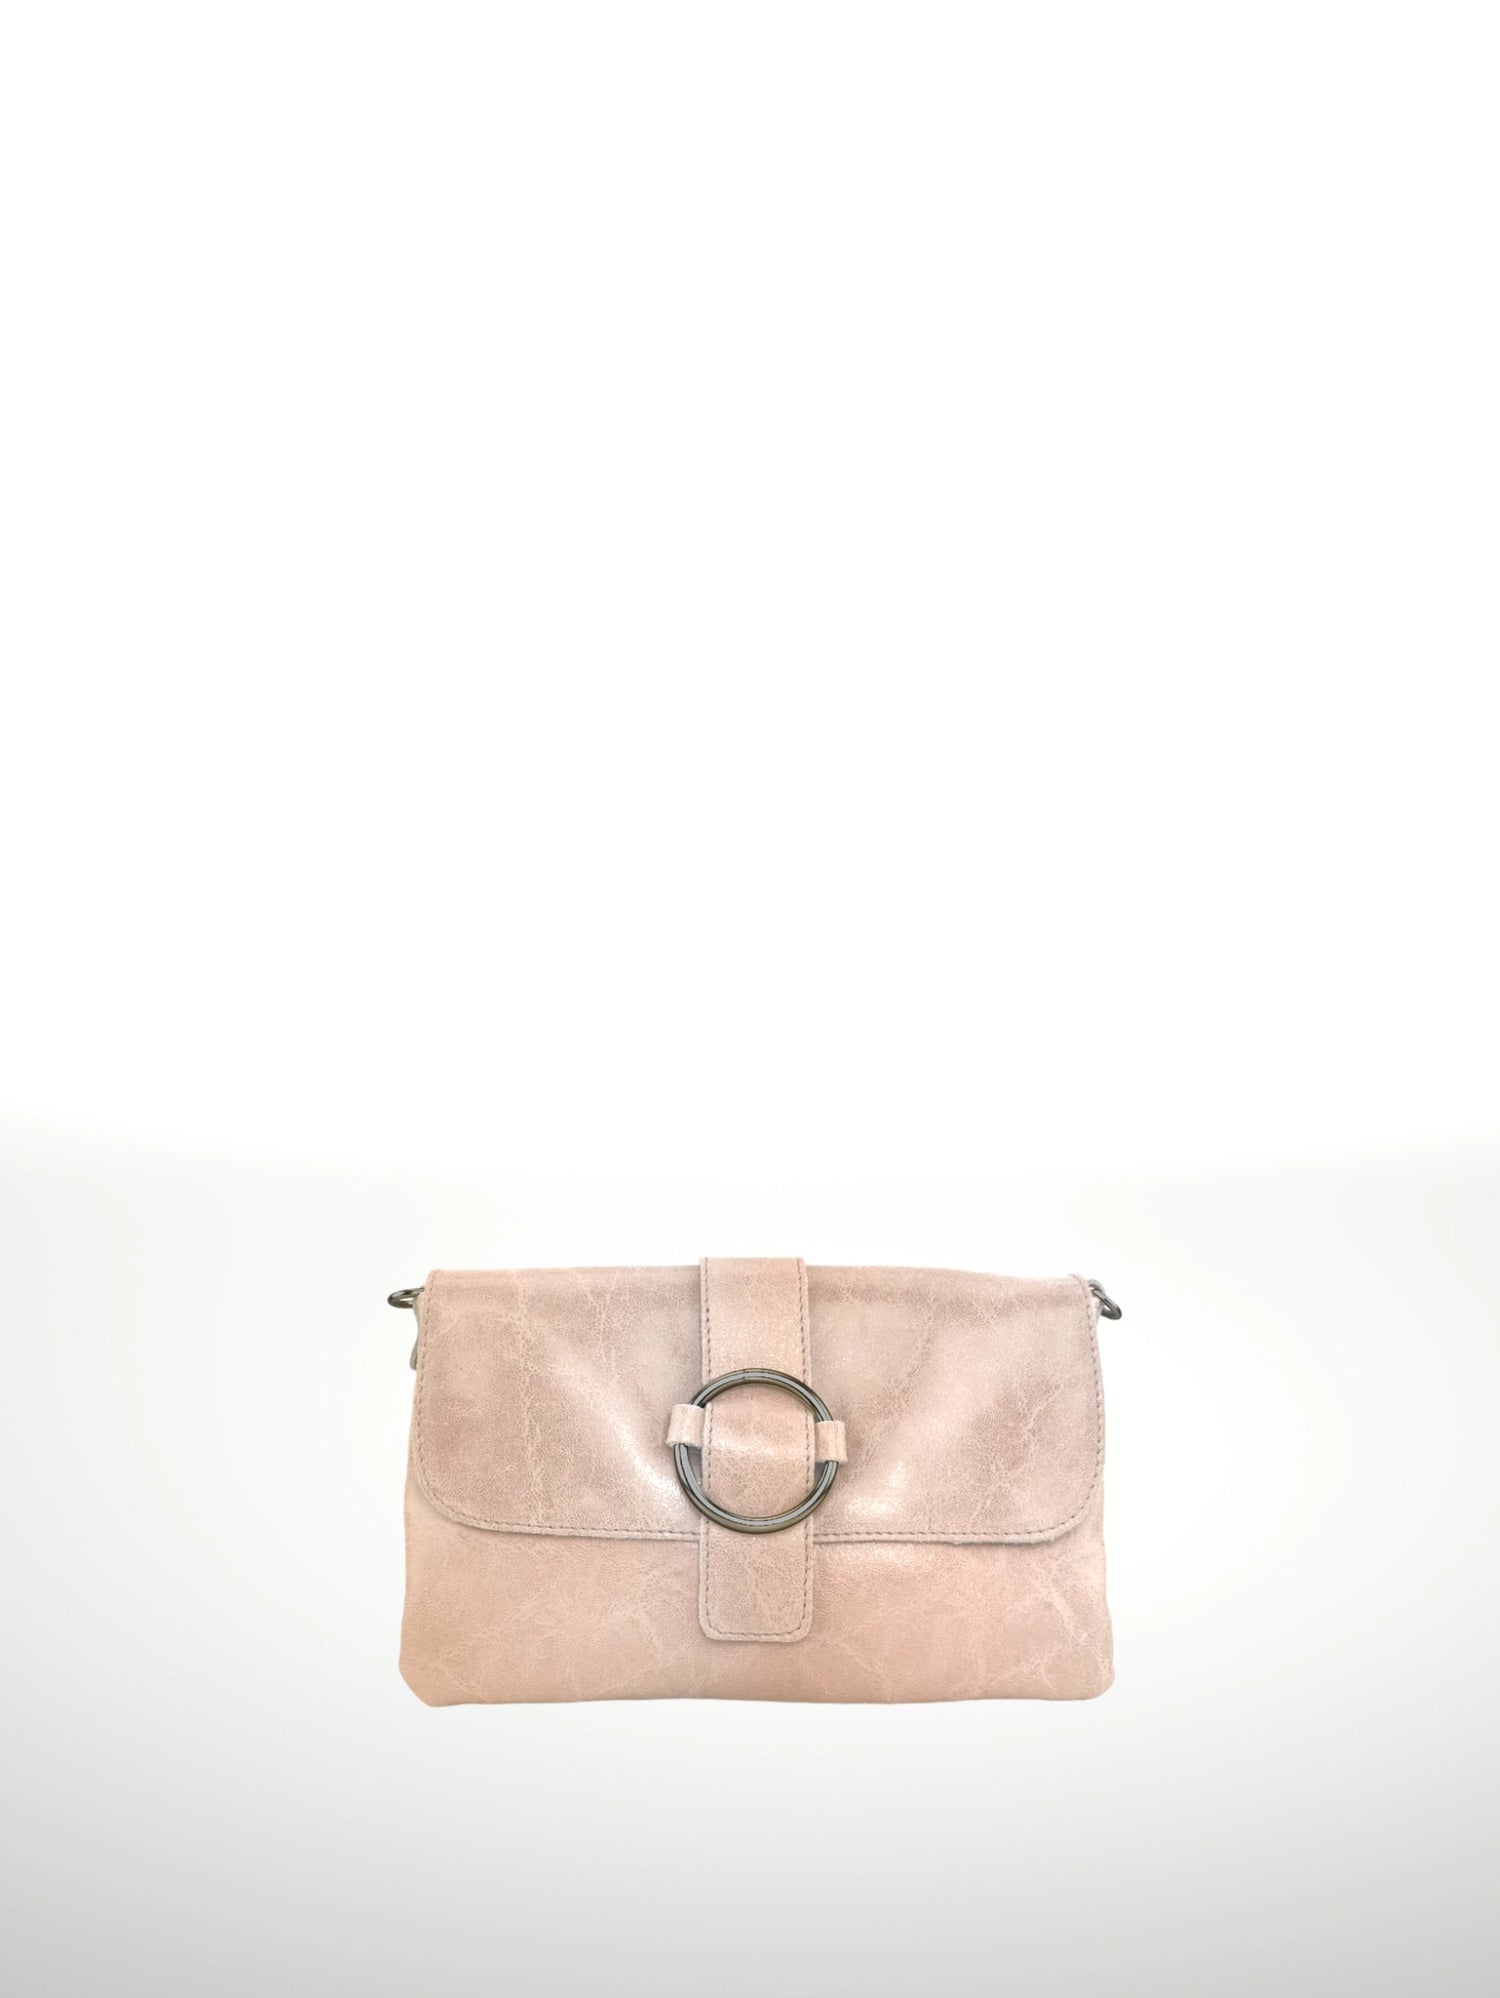 Leather Tote, Suede Bag, Shoulder Bag, Blush Pink Leather Bag